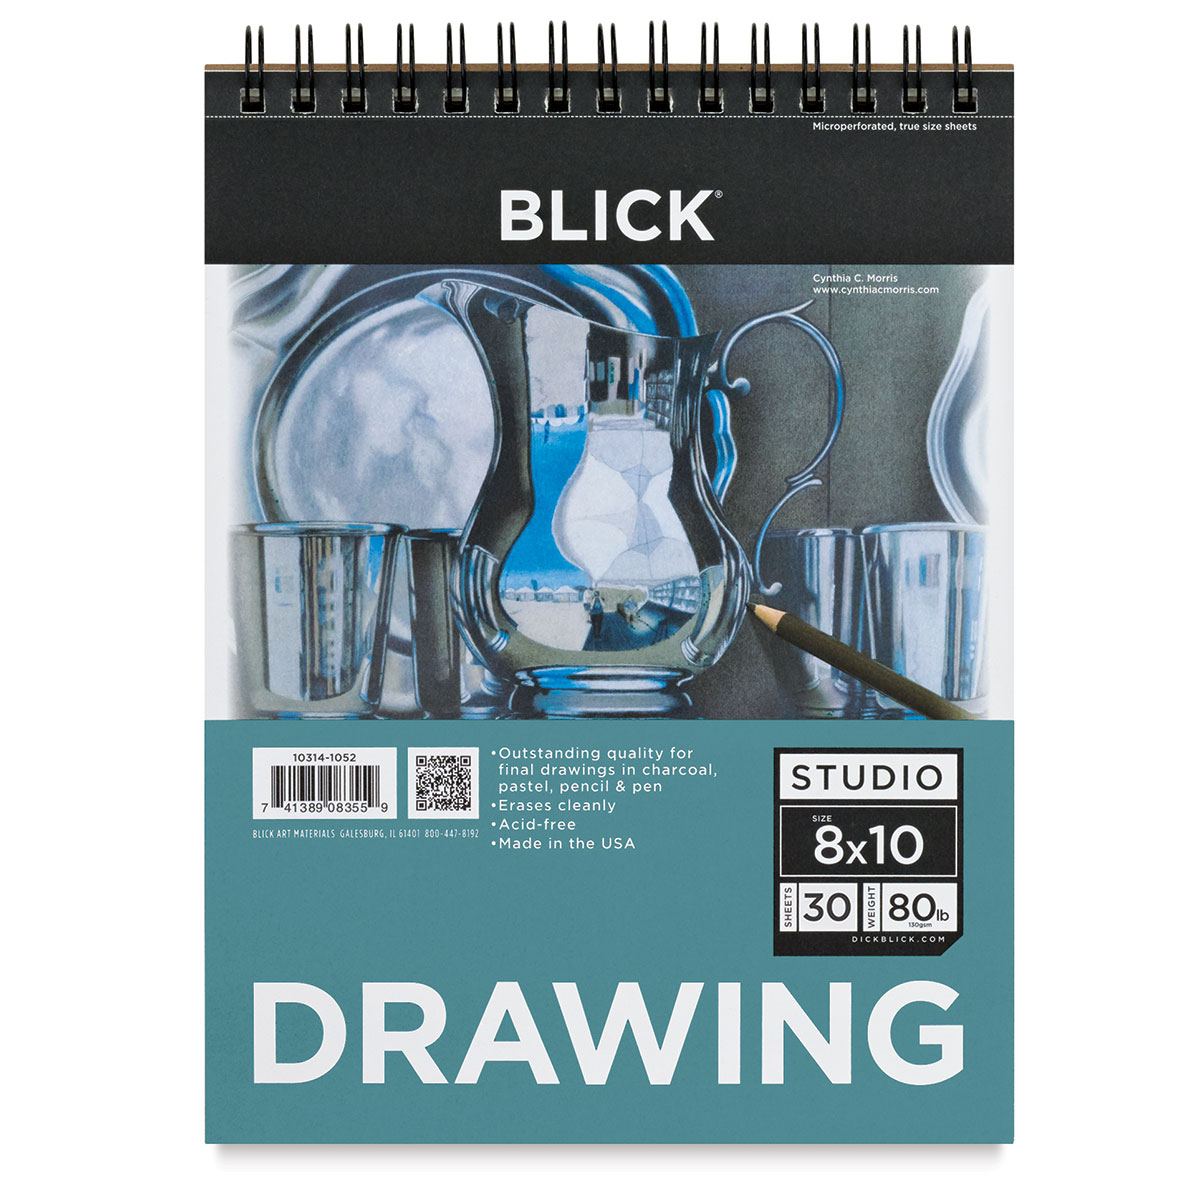 Blick Studio Drawing Pad 8" x 10", 30 Sheets BLICK Art Materials